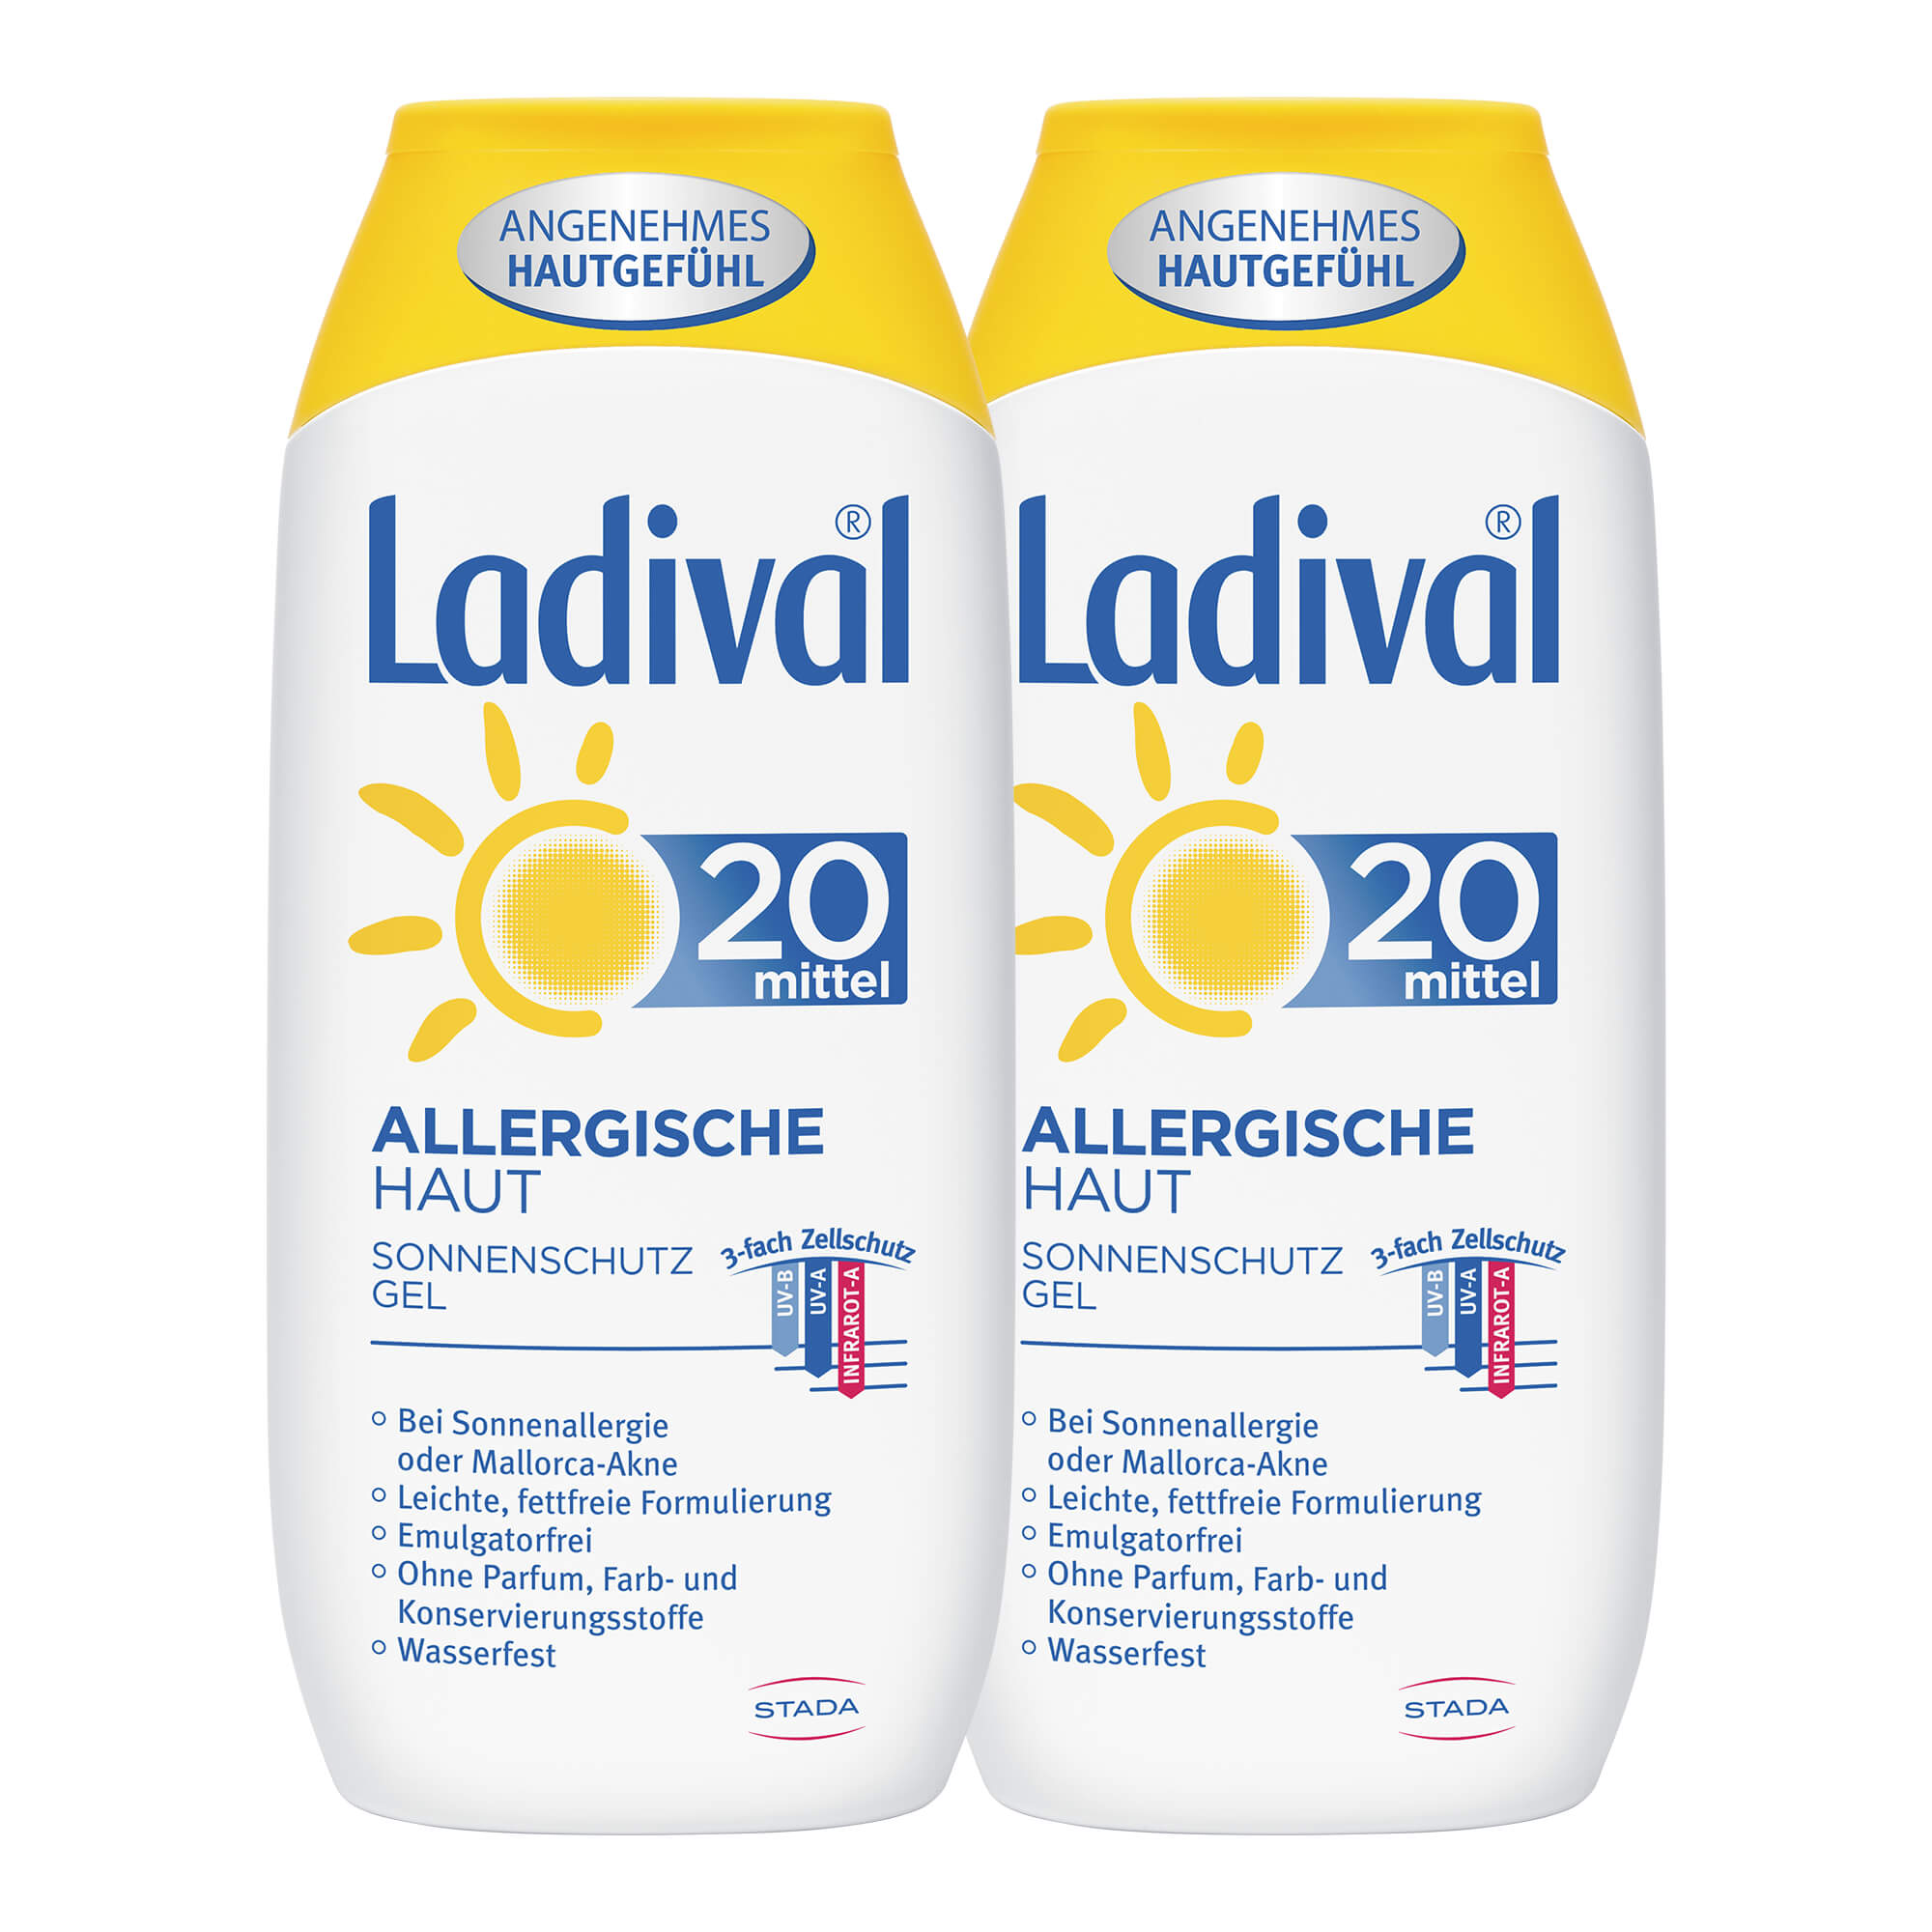 Sonnenschutz für zu Allergien neigende Haut. Mit LSF 20. Doppelpack.